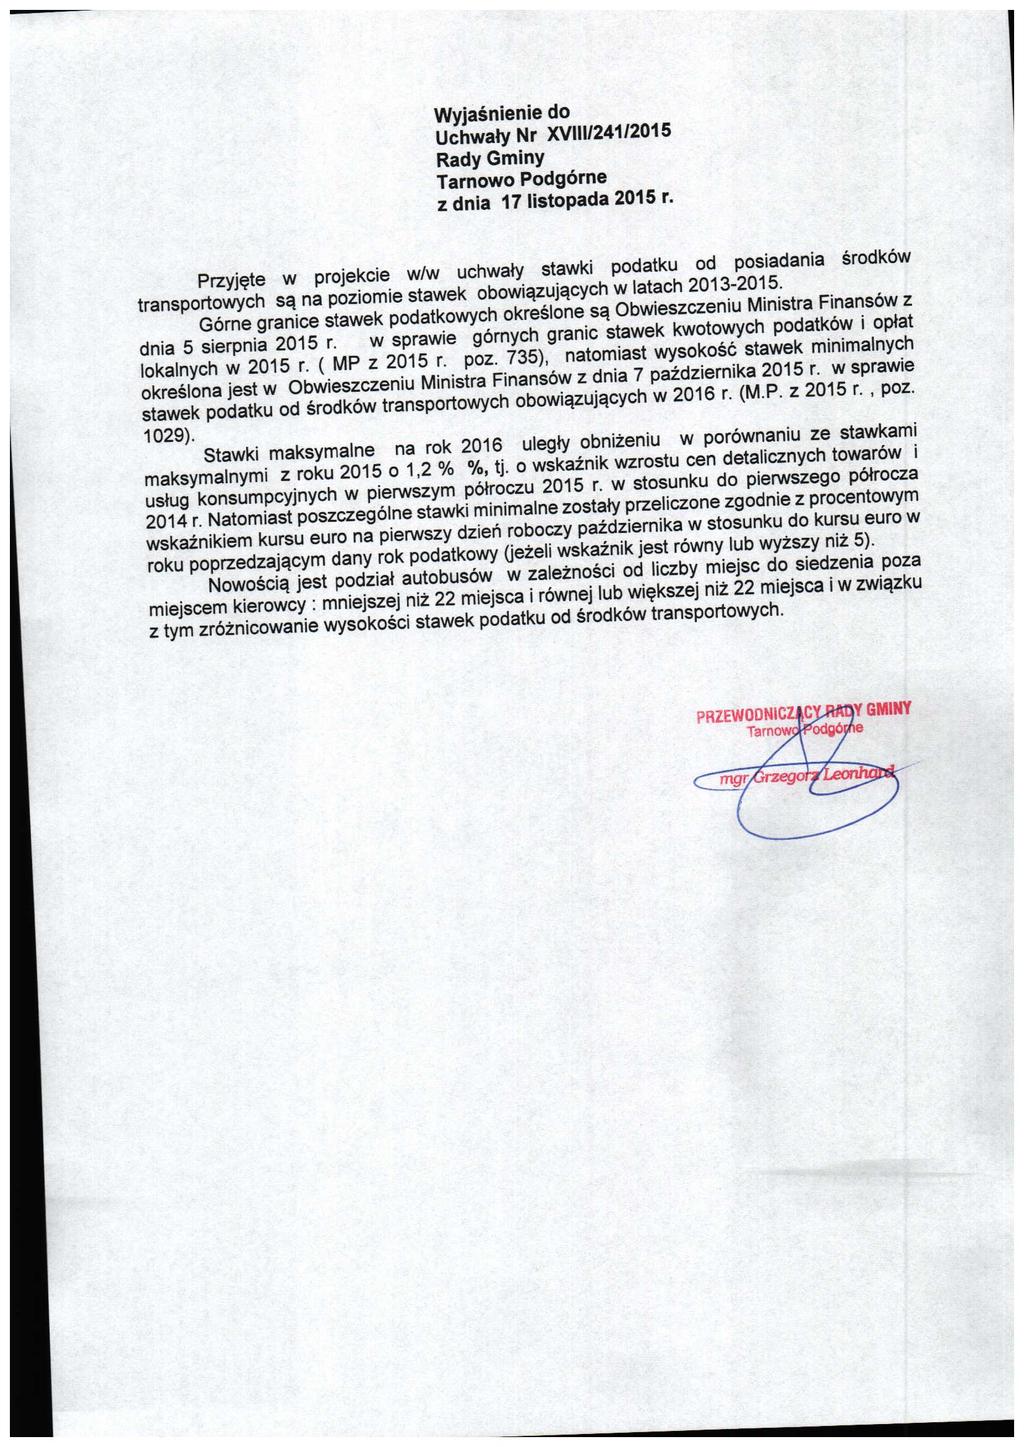 Wyjasnienie do Uchwaty Nr XVIII/241/2015 Rady Gminy Tarnowo Podgorne zdnia 17 listopada 2015 r.